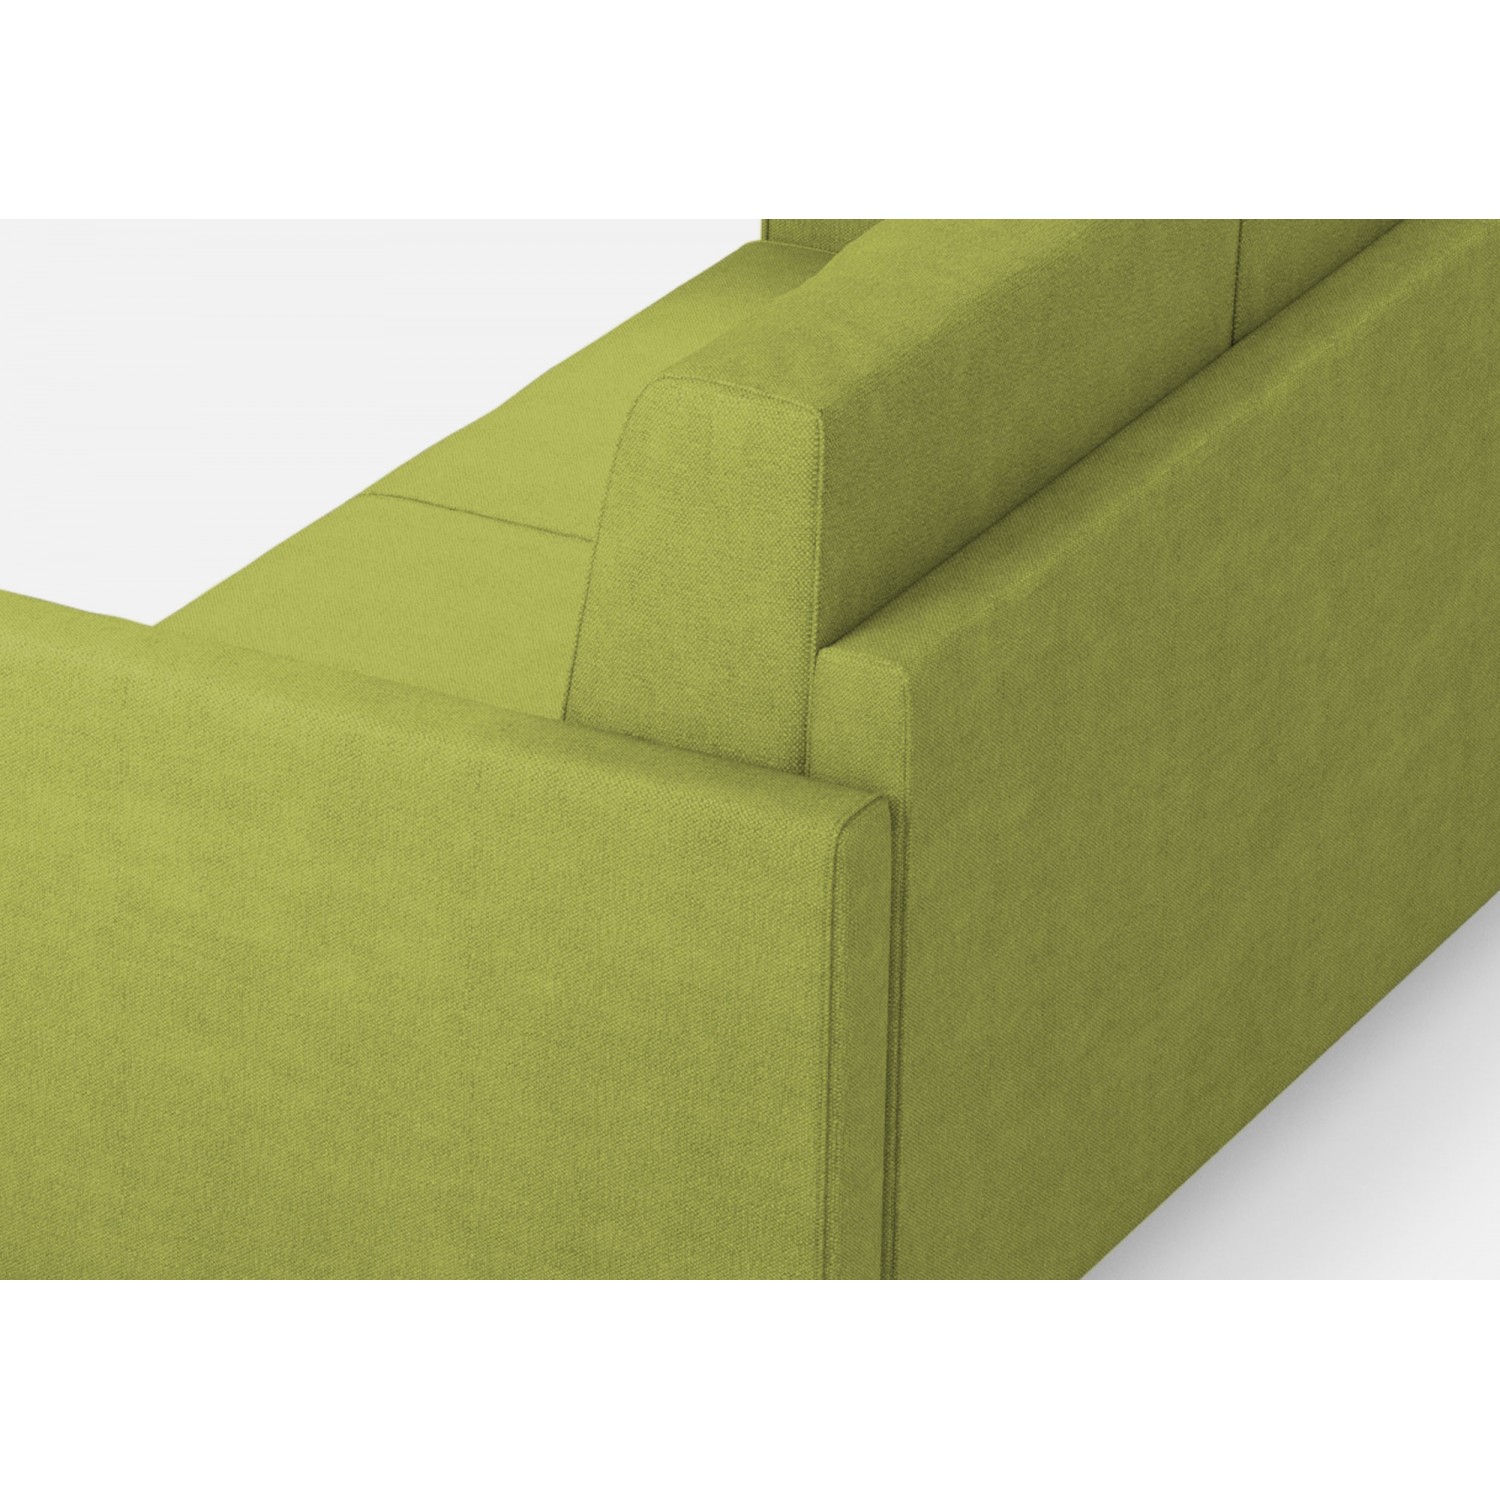 Ityhome Divano Karay 3 posti  (tre sedute da 60cm) + angolo + divano 3 posti (tre sedute da 60cm) misure esterne L.281x281 colore verde